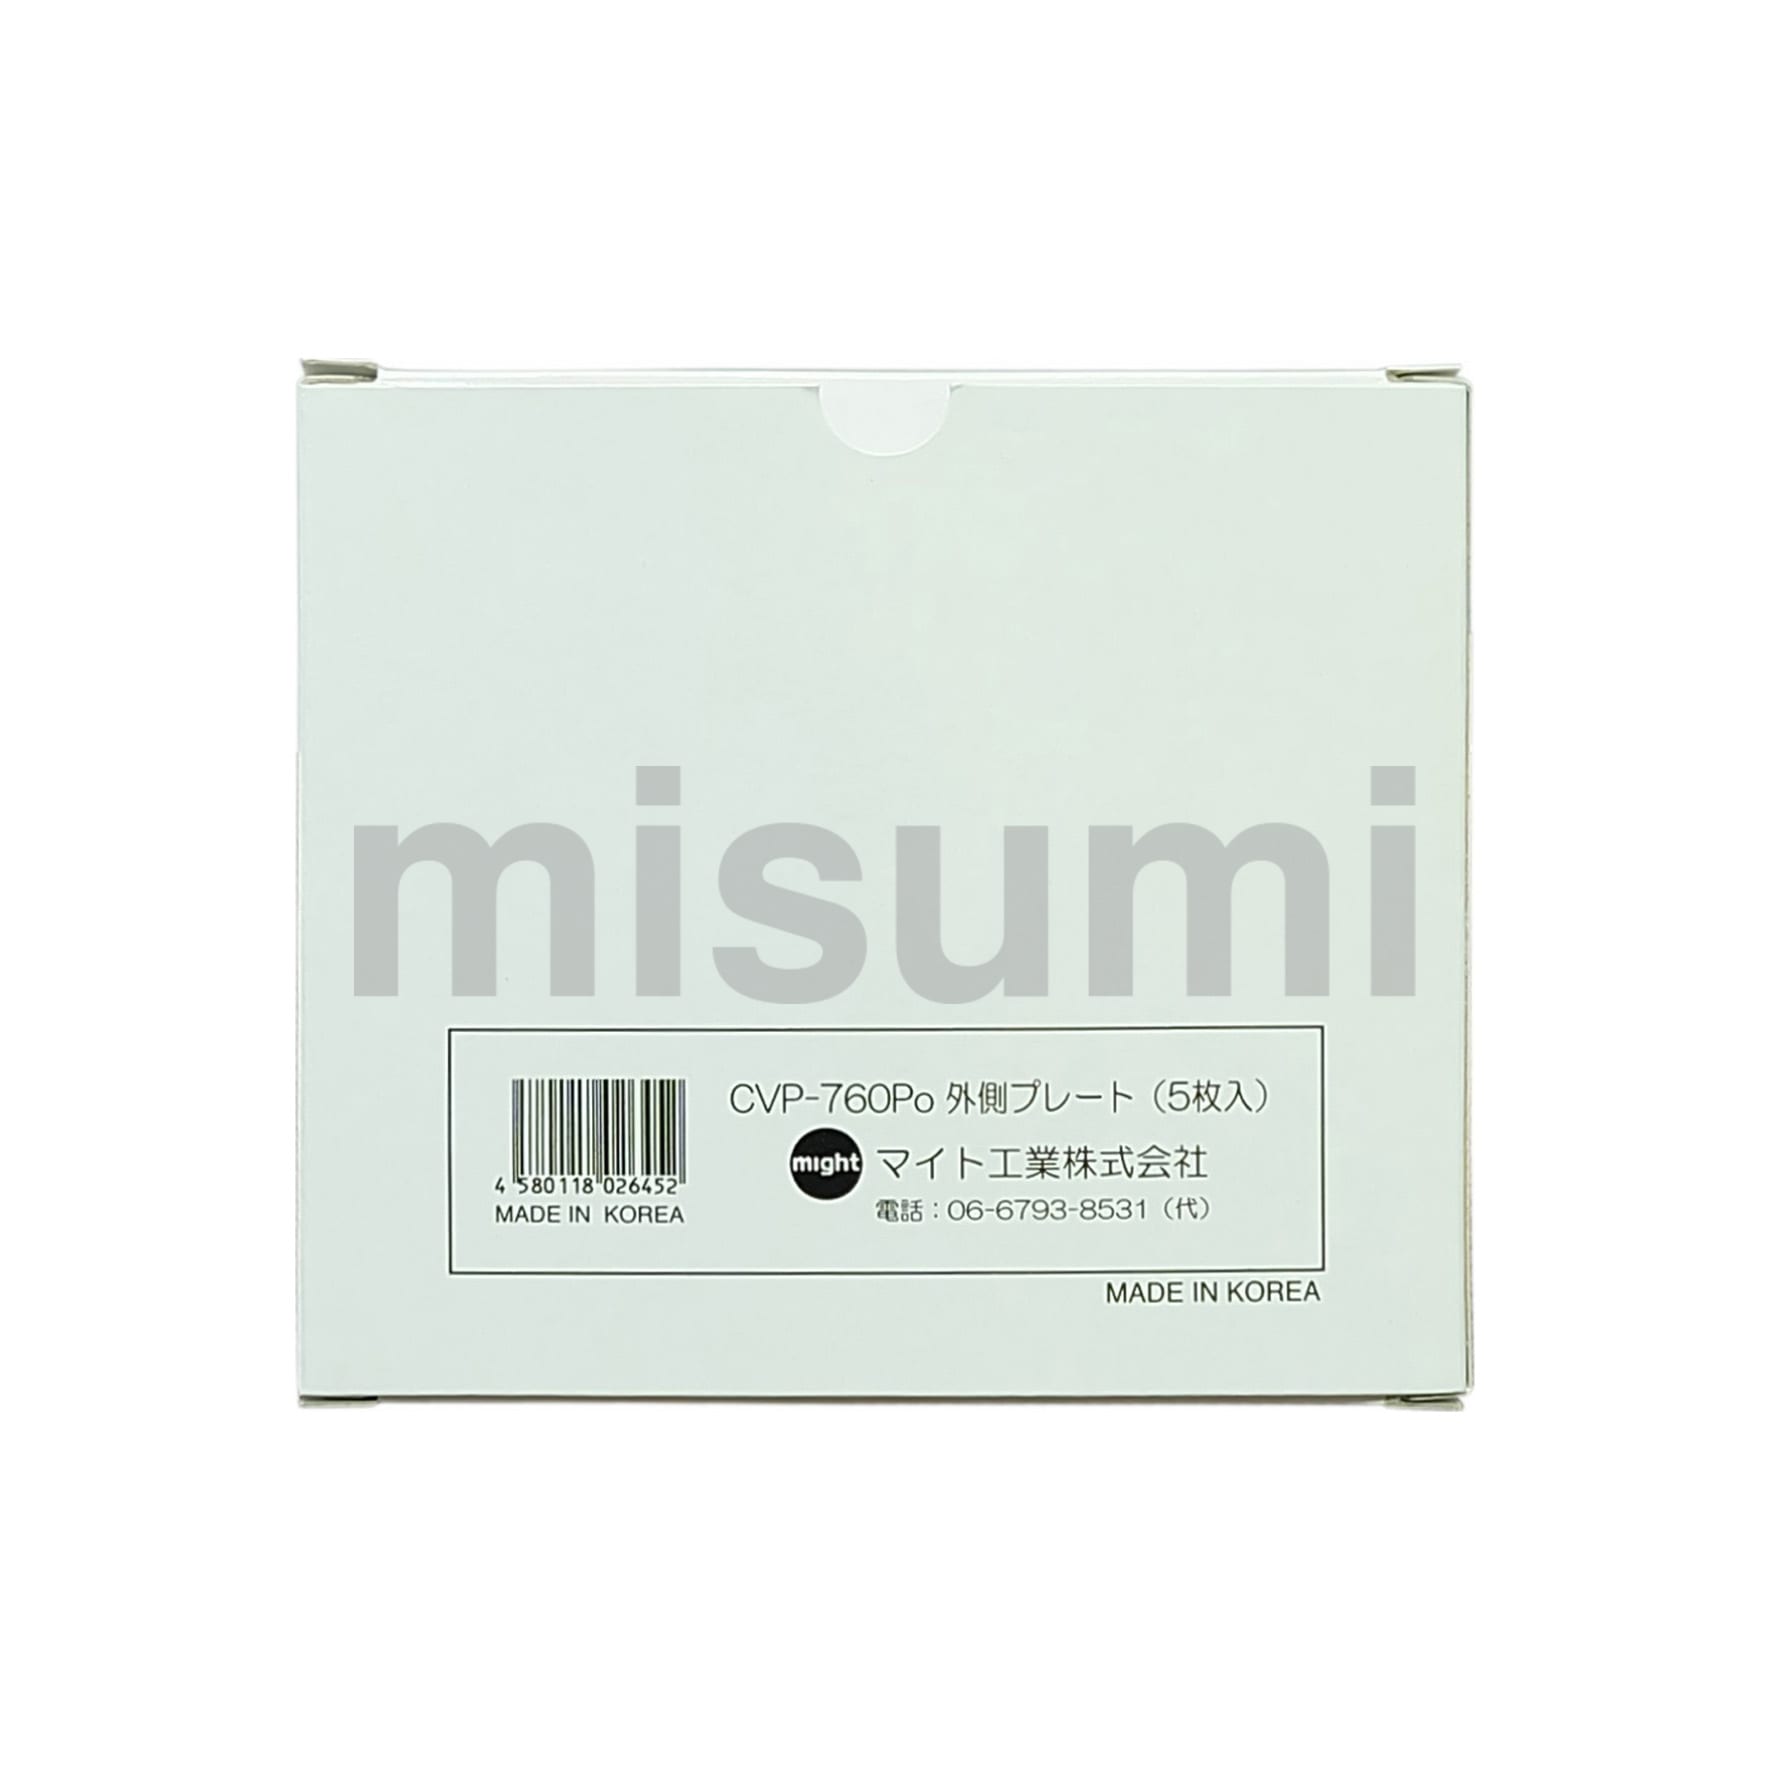 CVP-900S 溶接面 レインボーマスクシリーズ用カバープレート マイト工業 MISUMI(ミスミ)